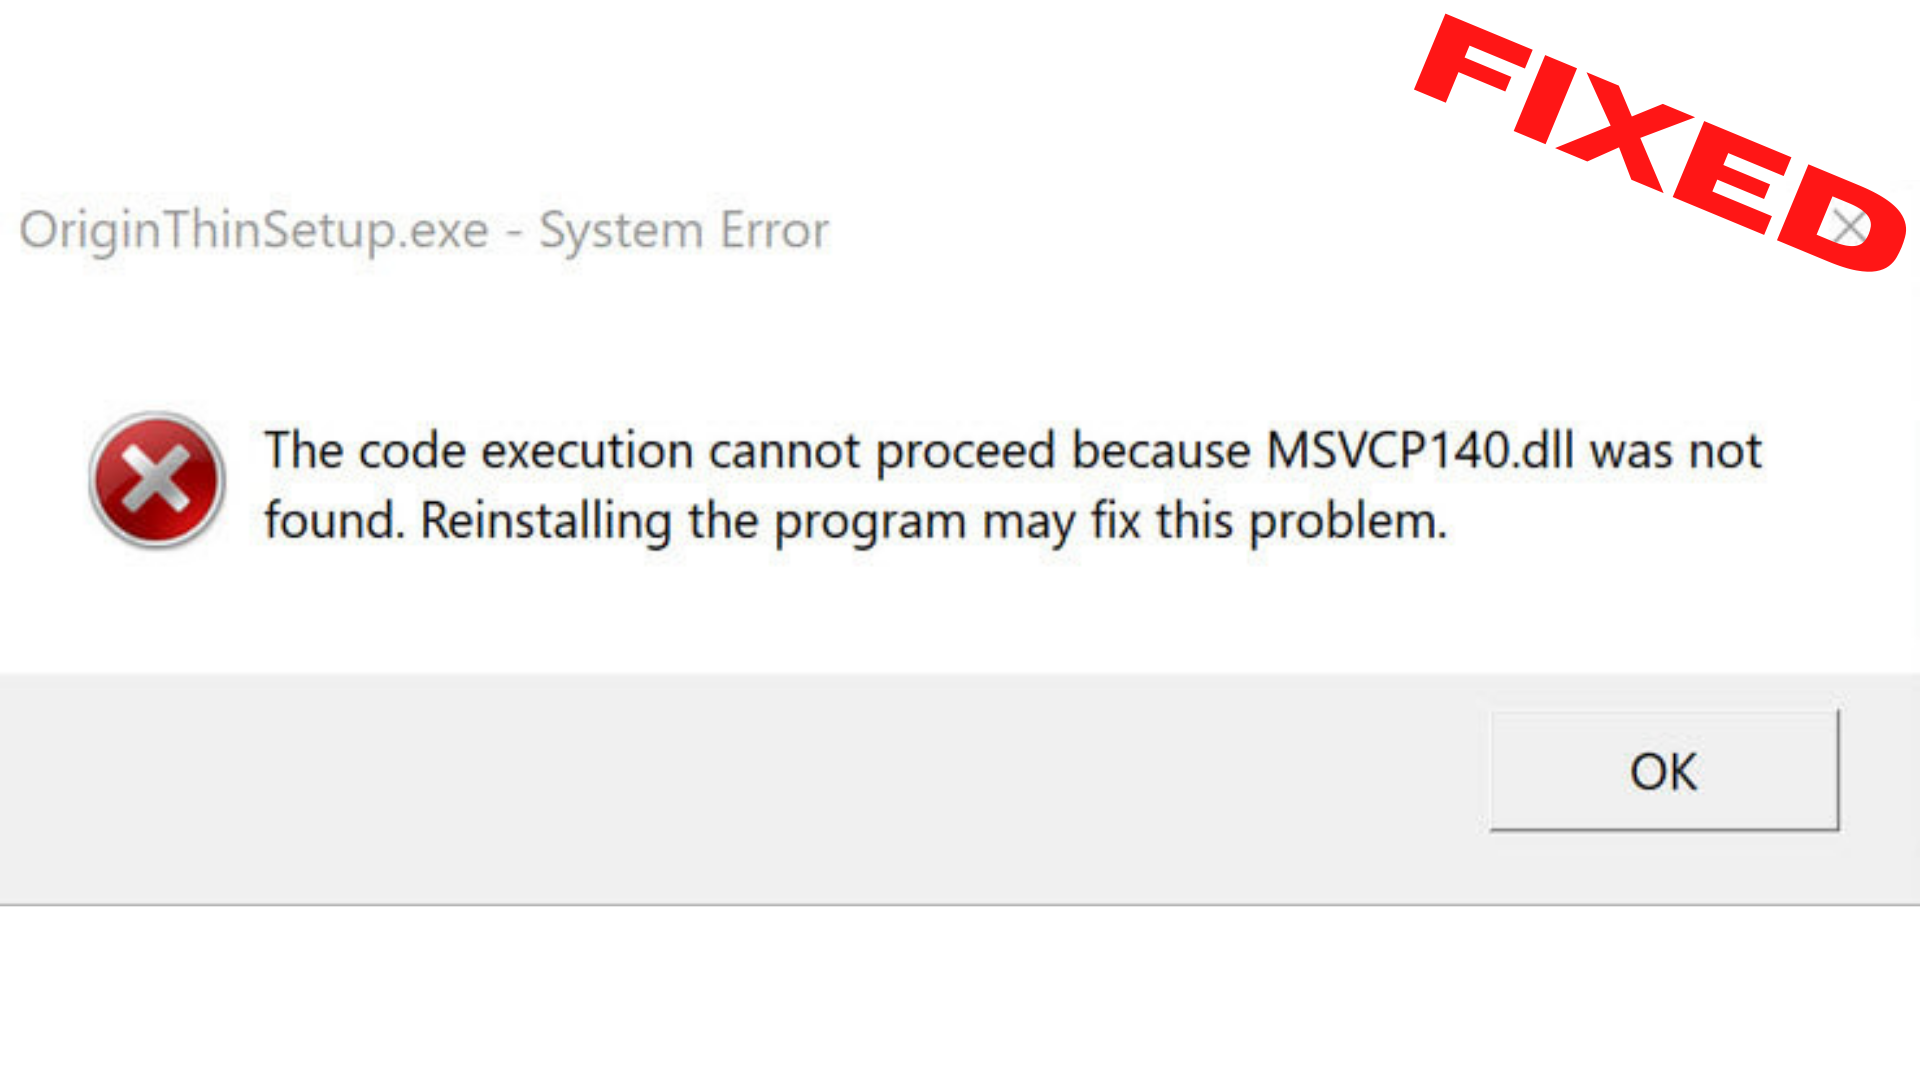 не удалось продолжить выполнение кода поскольку система не обнаружила msvcp140 dll гта 5 рп фото 11